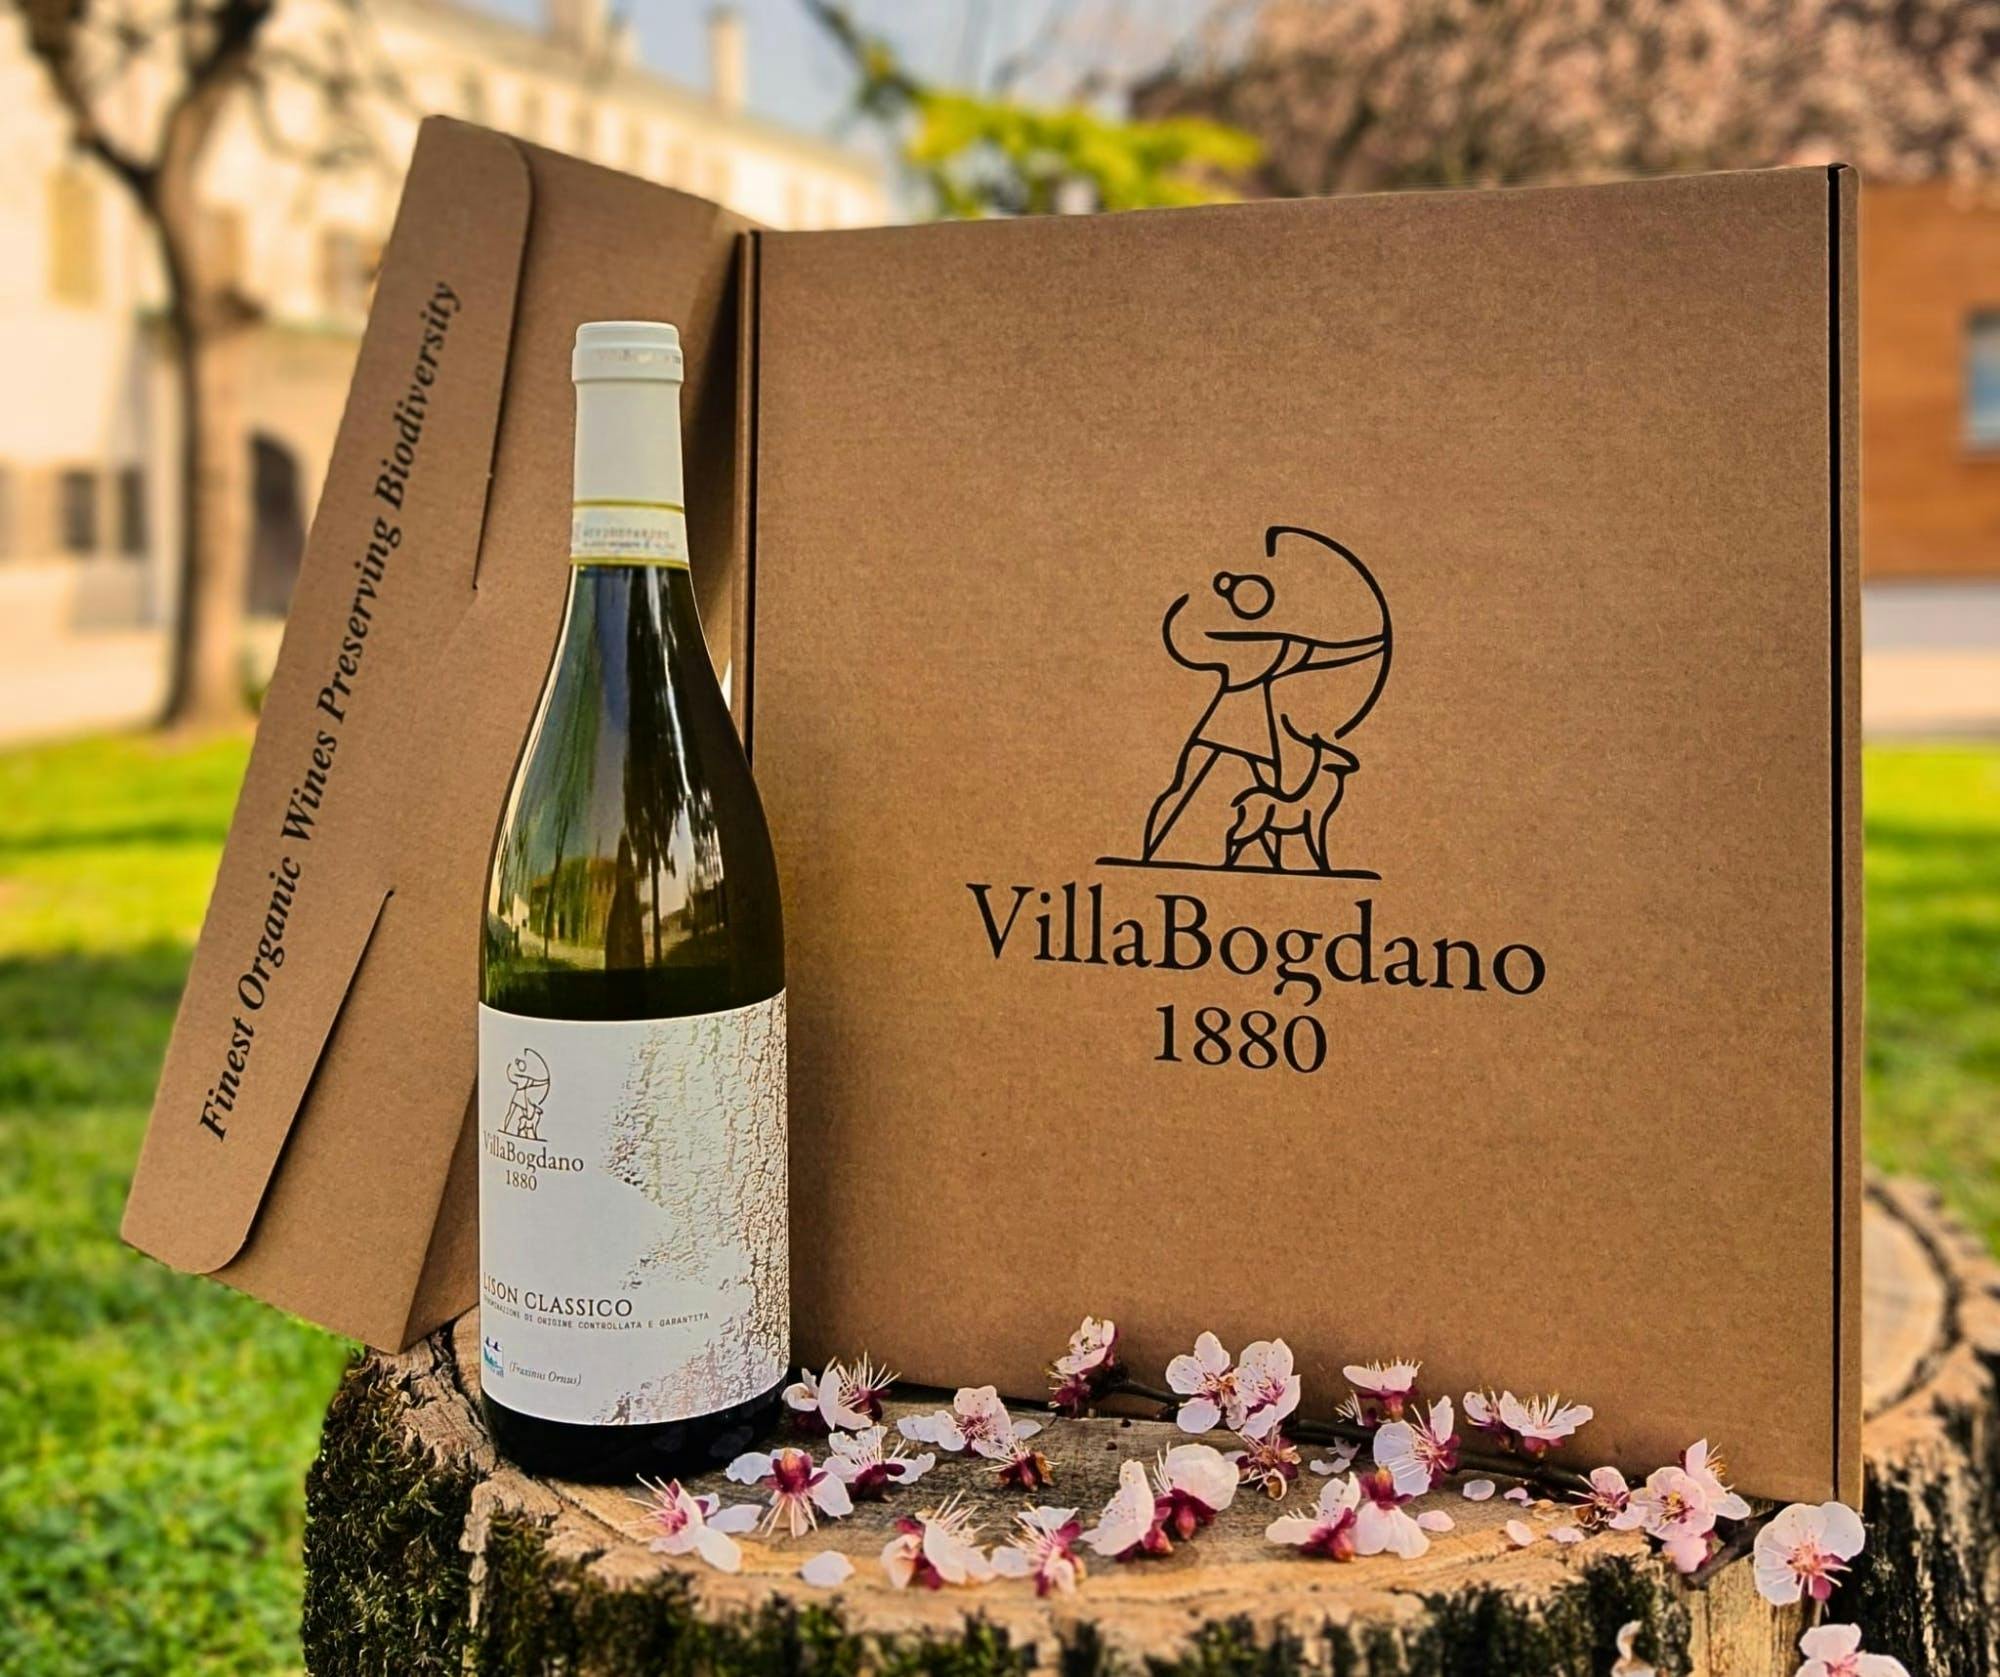 Visita guiada a pie por los viñedos de Villa Bogdano 1880 con cata de vinos